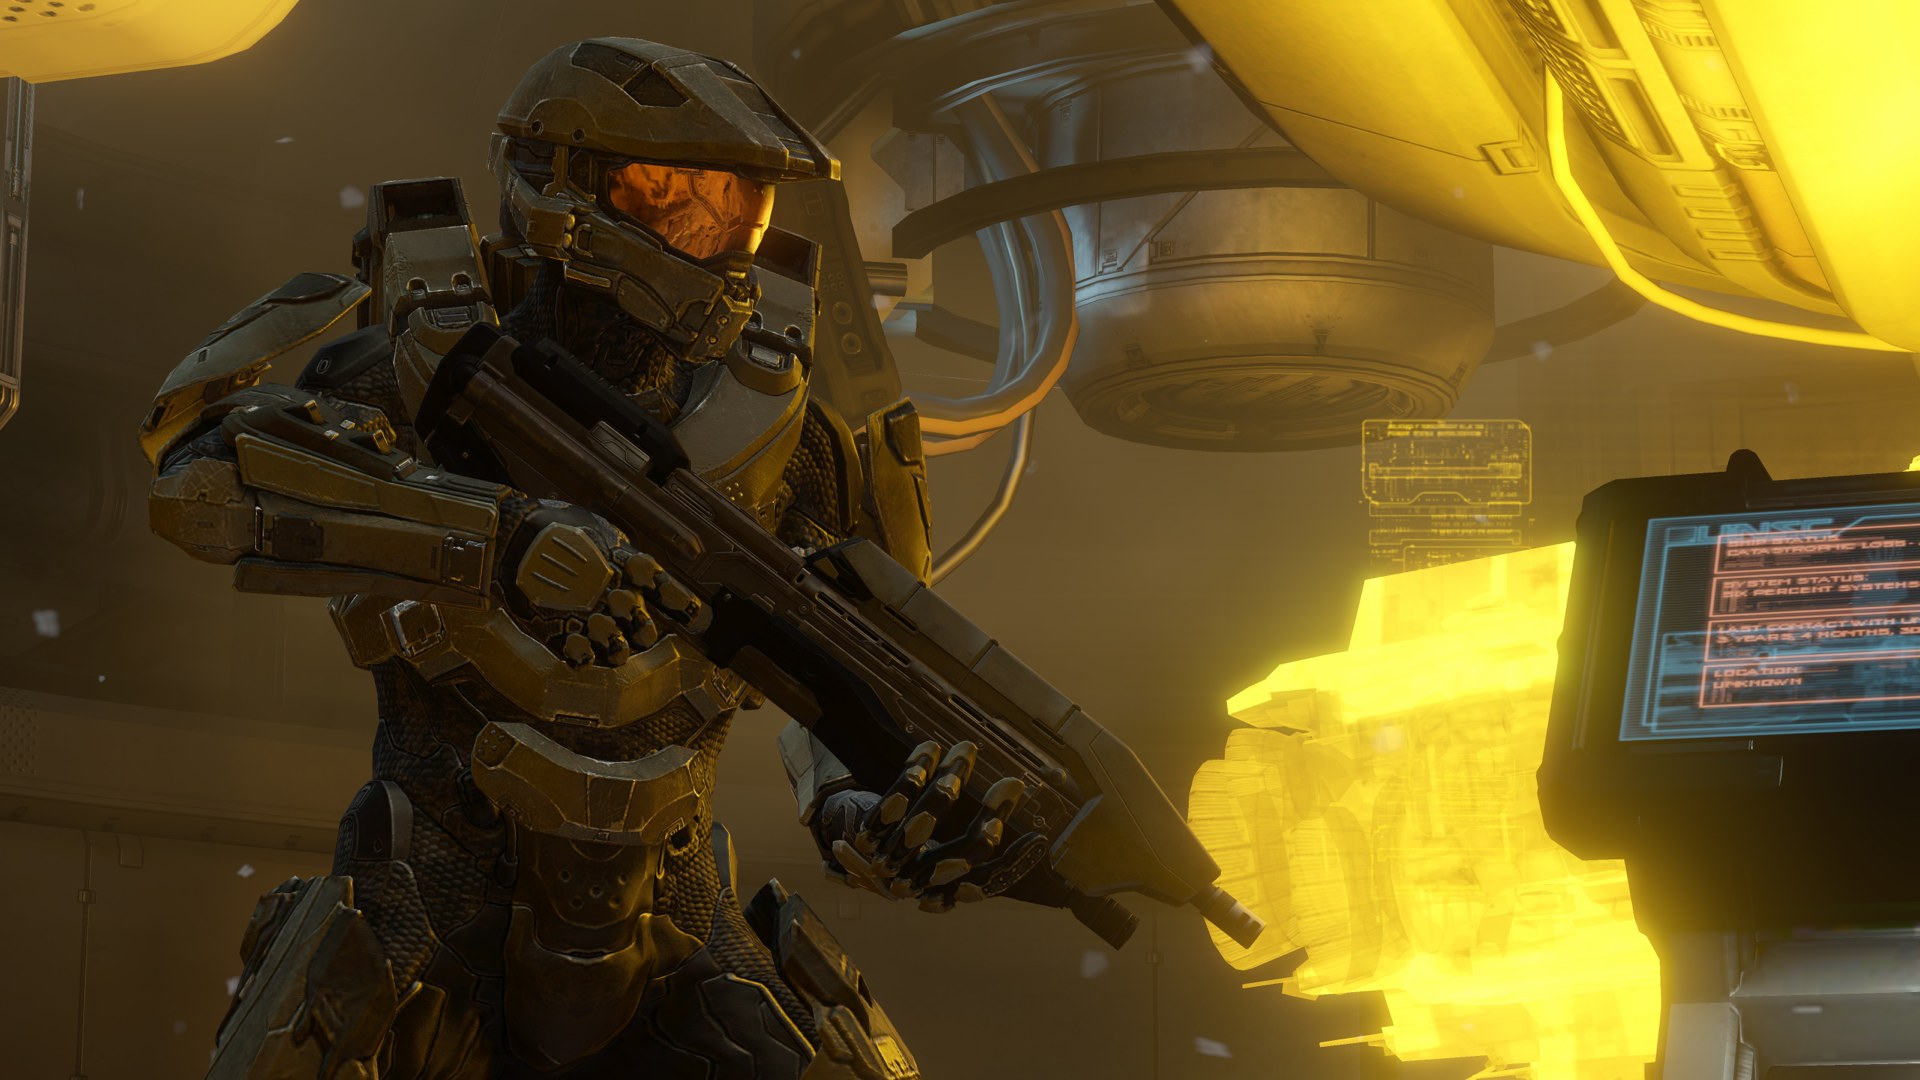 Immagine pubblicata in relazione al seguente contenuto: Primi screenshot e artwork del first-person shooter Halo 4 | Nome immagine: news17066_1.jpg